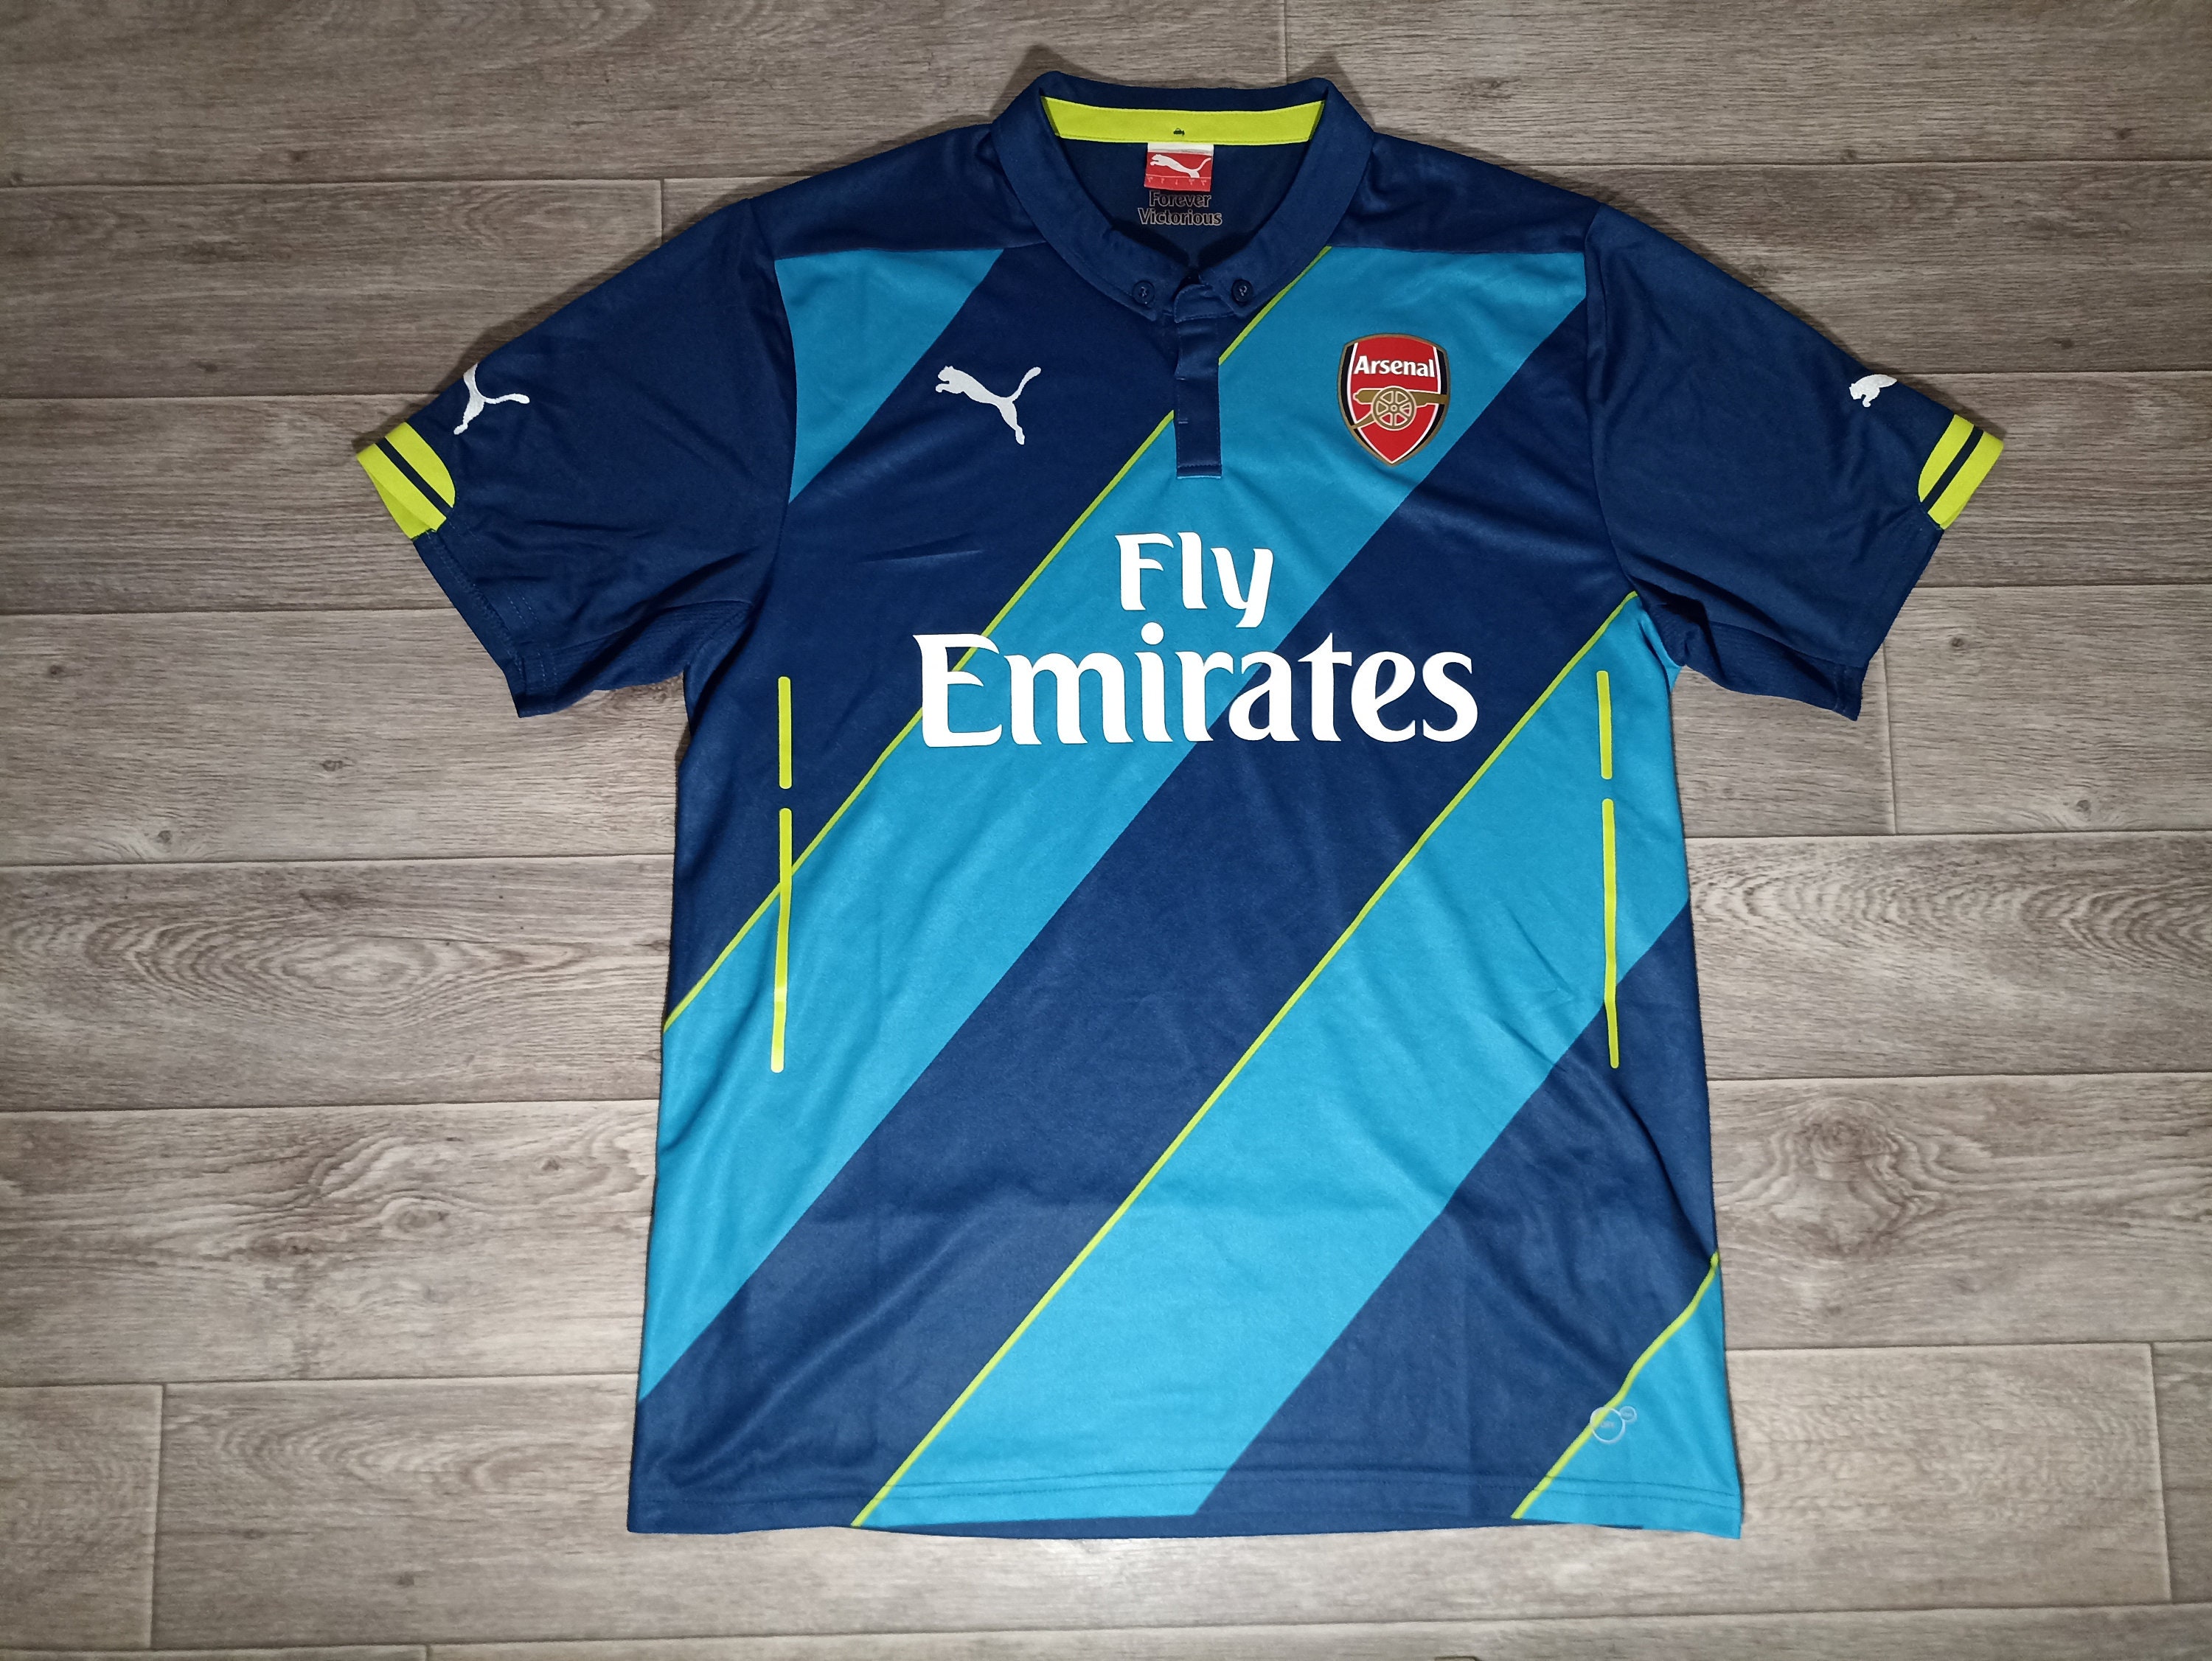 Arsenal FC AFC Gunners England Puma 2014/15 Blue Green Football Soccer  Sports Men's Uniform Shirt Jersey Knitwear Size L 